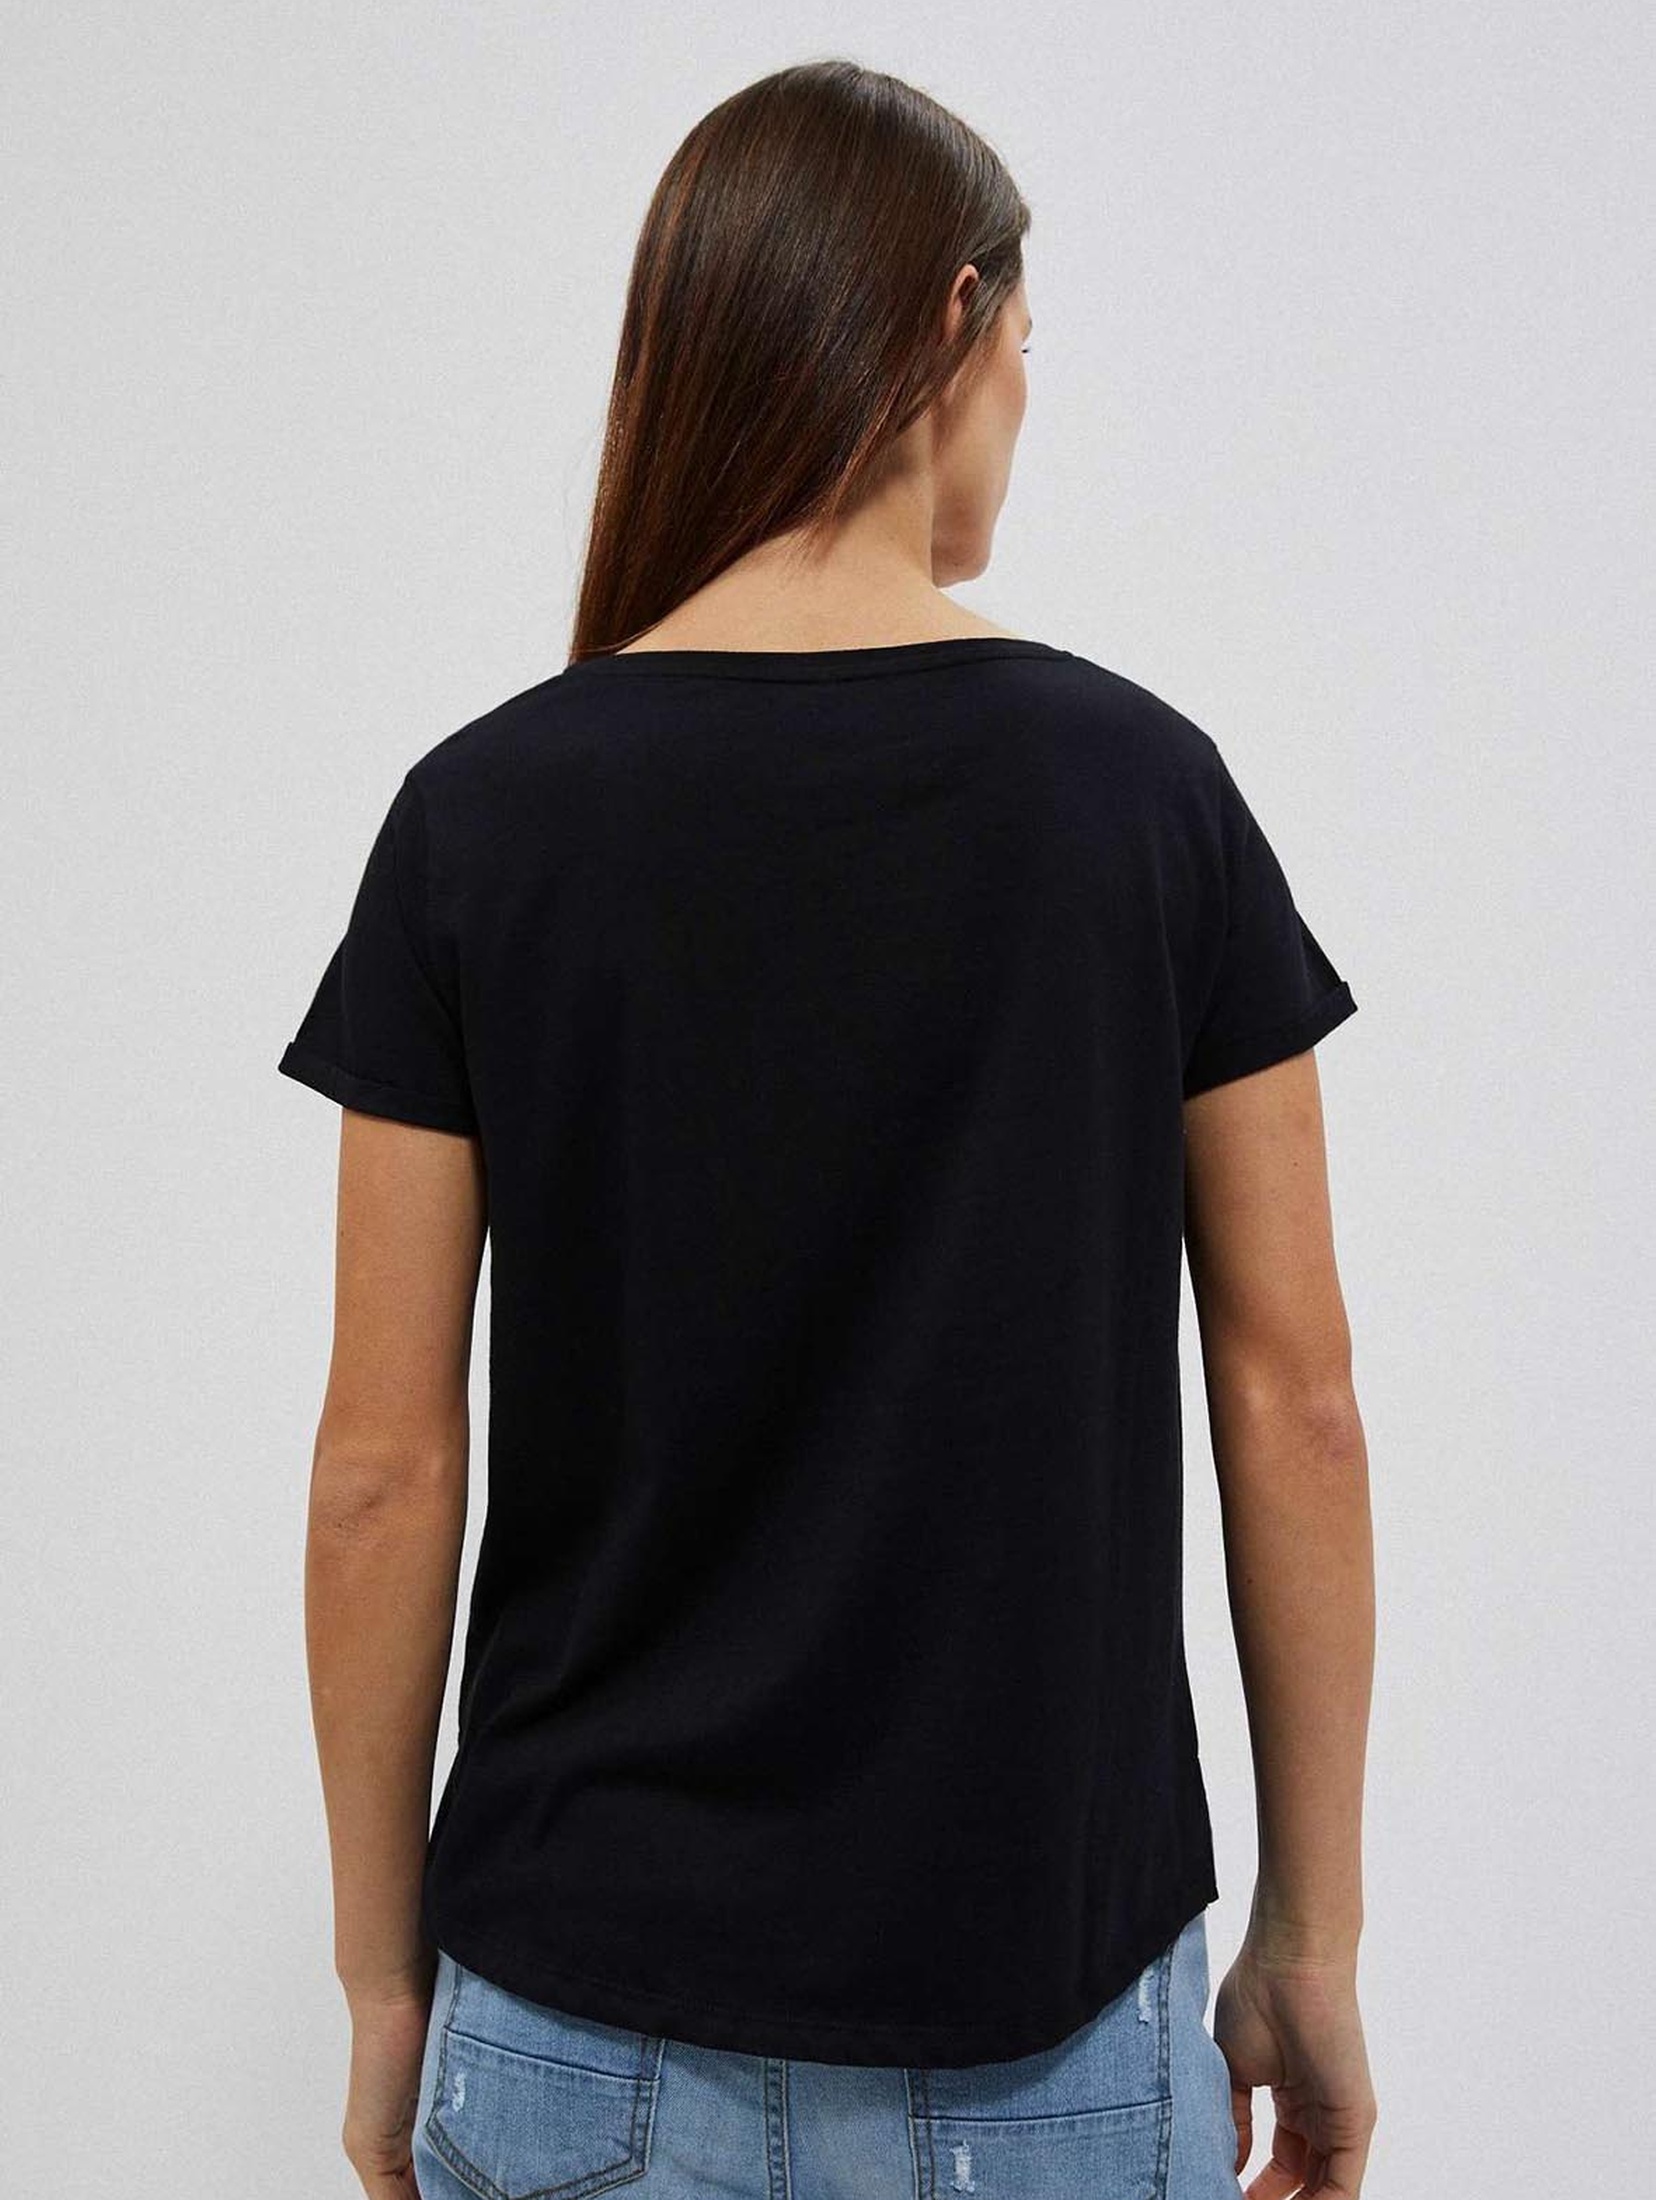 Bawełniany czarny t-shirt damski z kieszonką